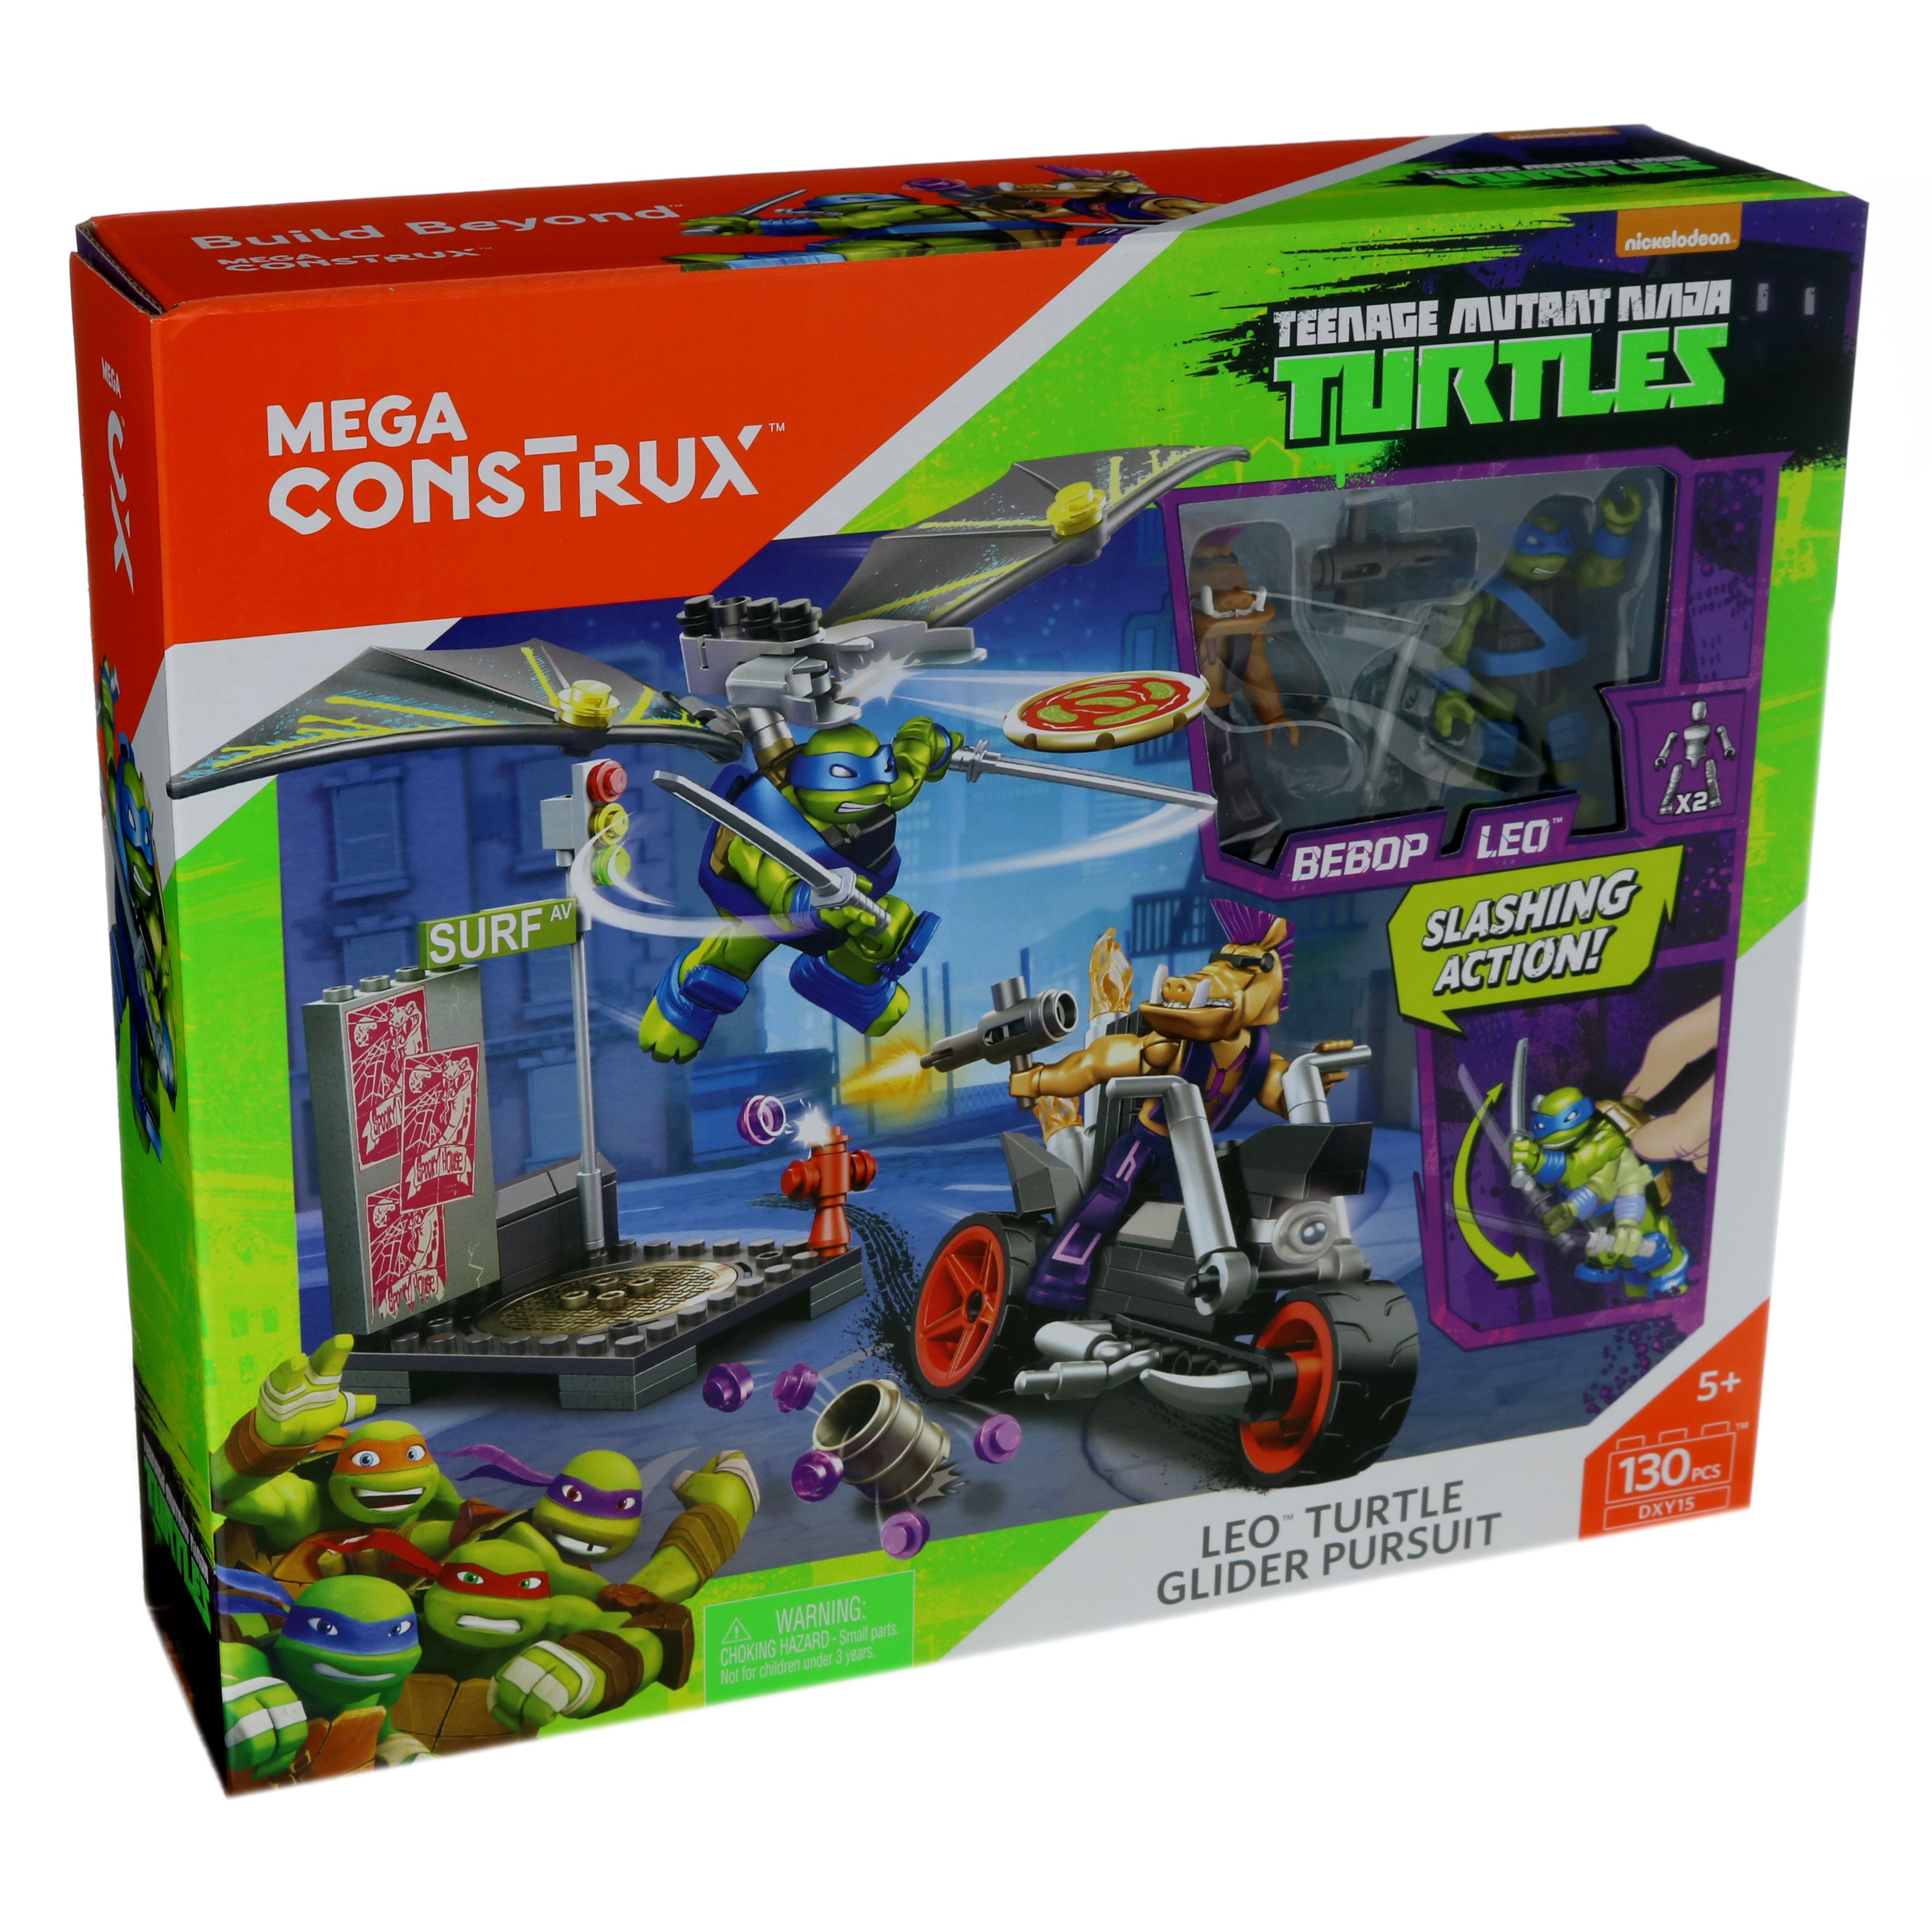 Mega Construx TMNT Leo Turtle Glider Pursuit set DXY15 130 pcs 